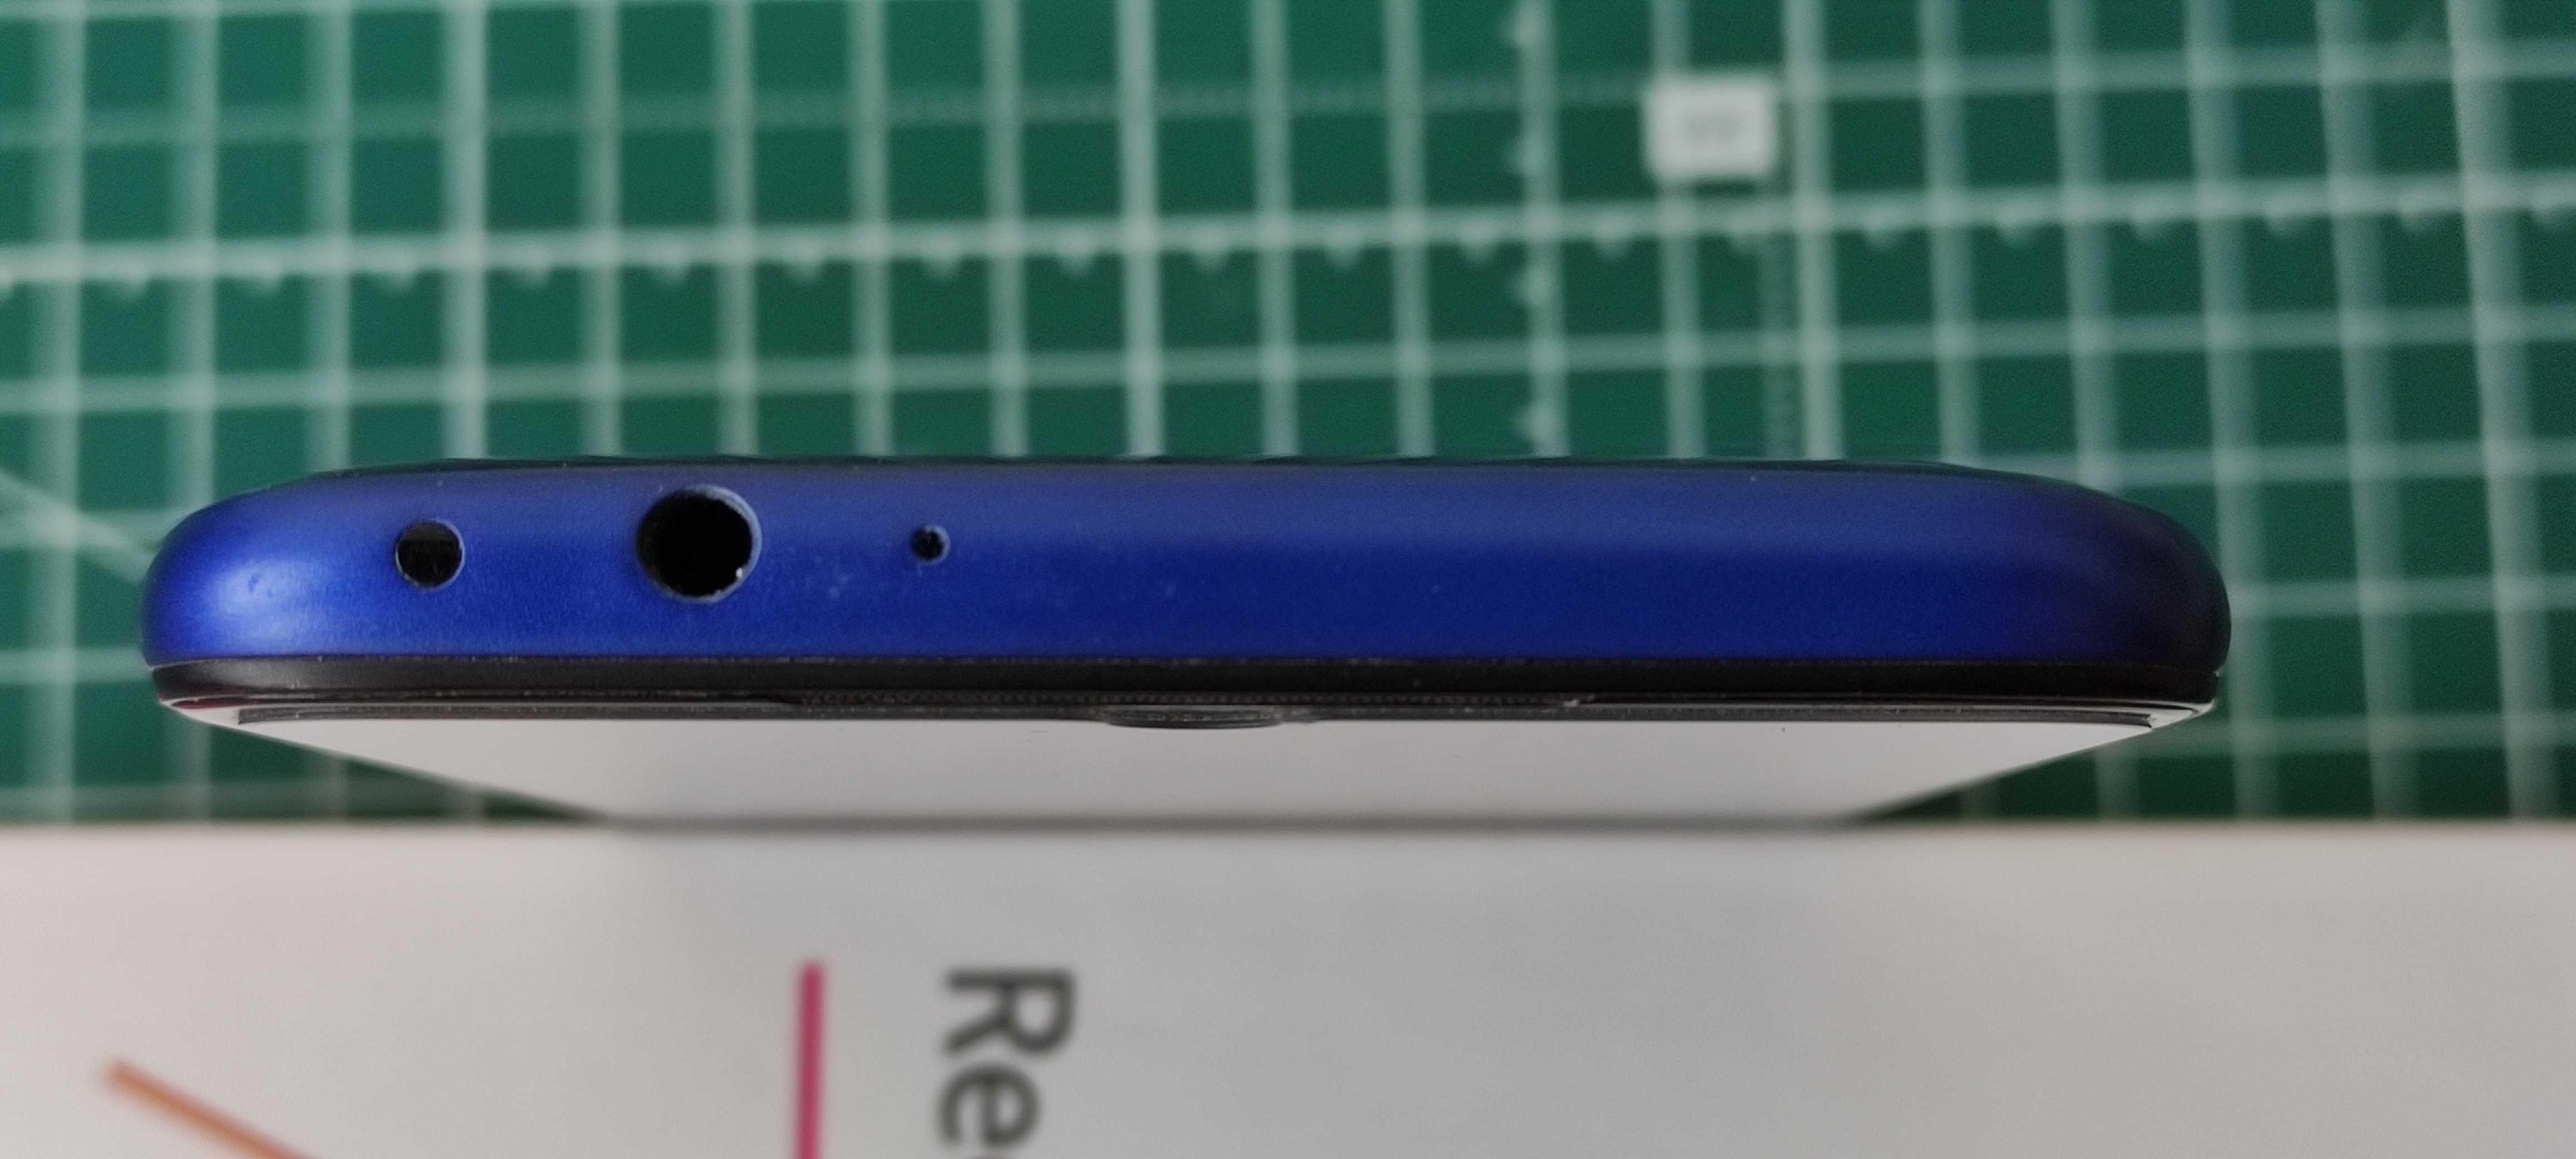 Xiaomi Redmi 7 3/32